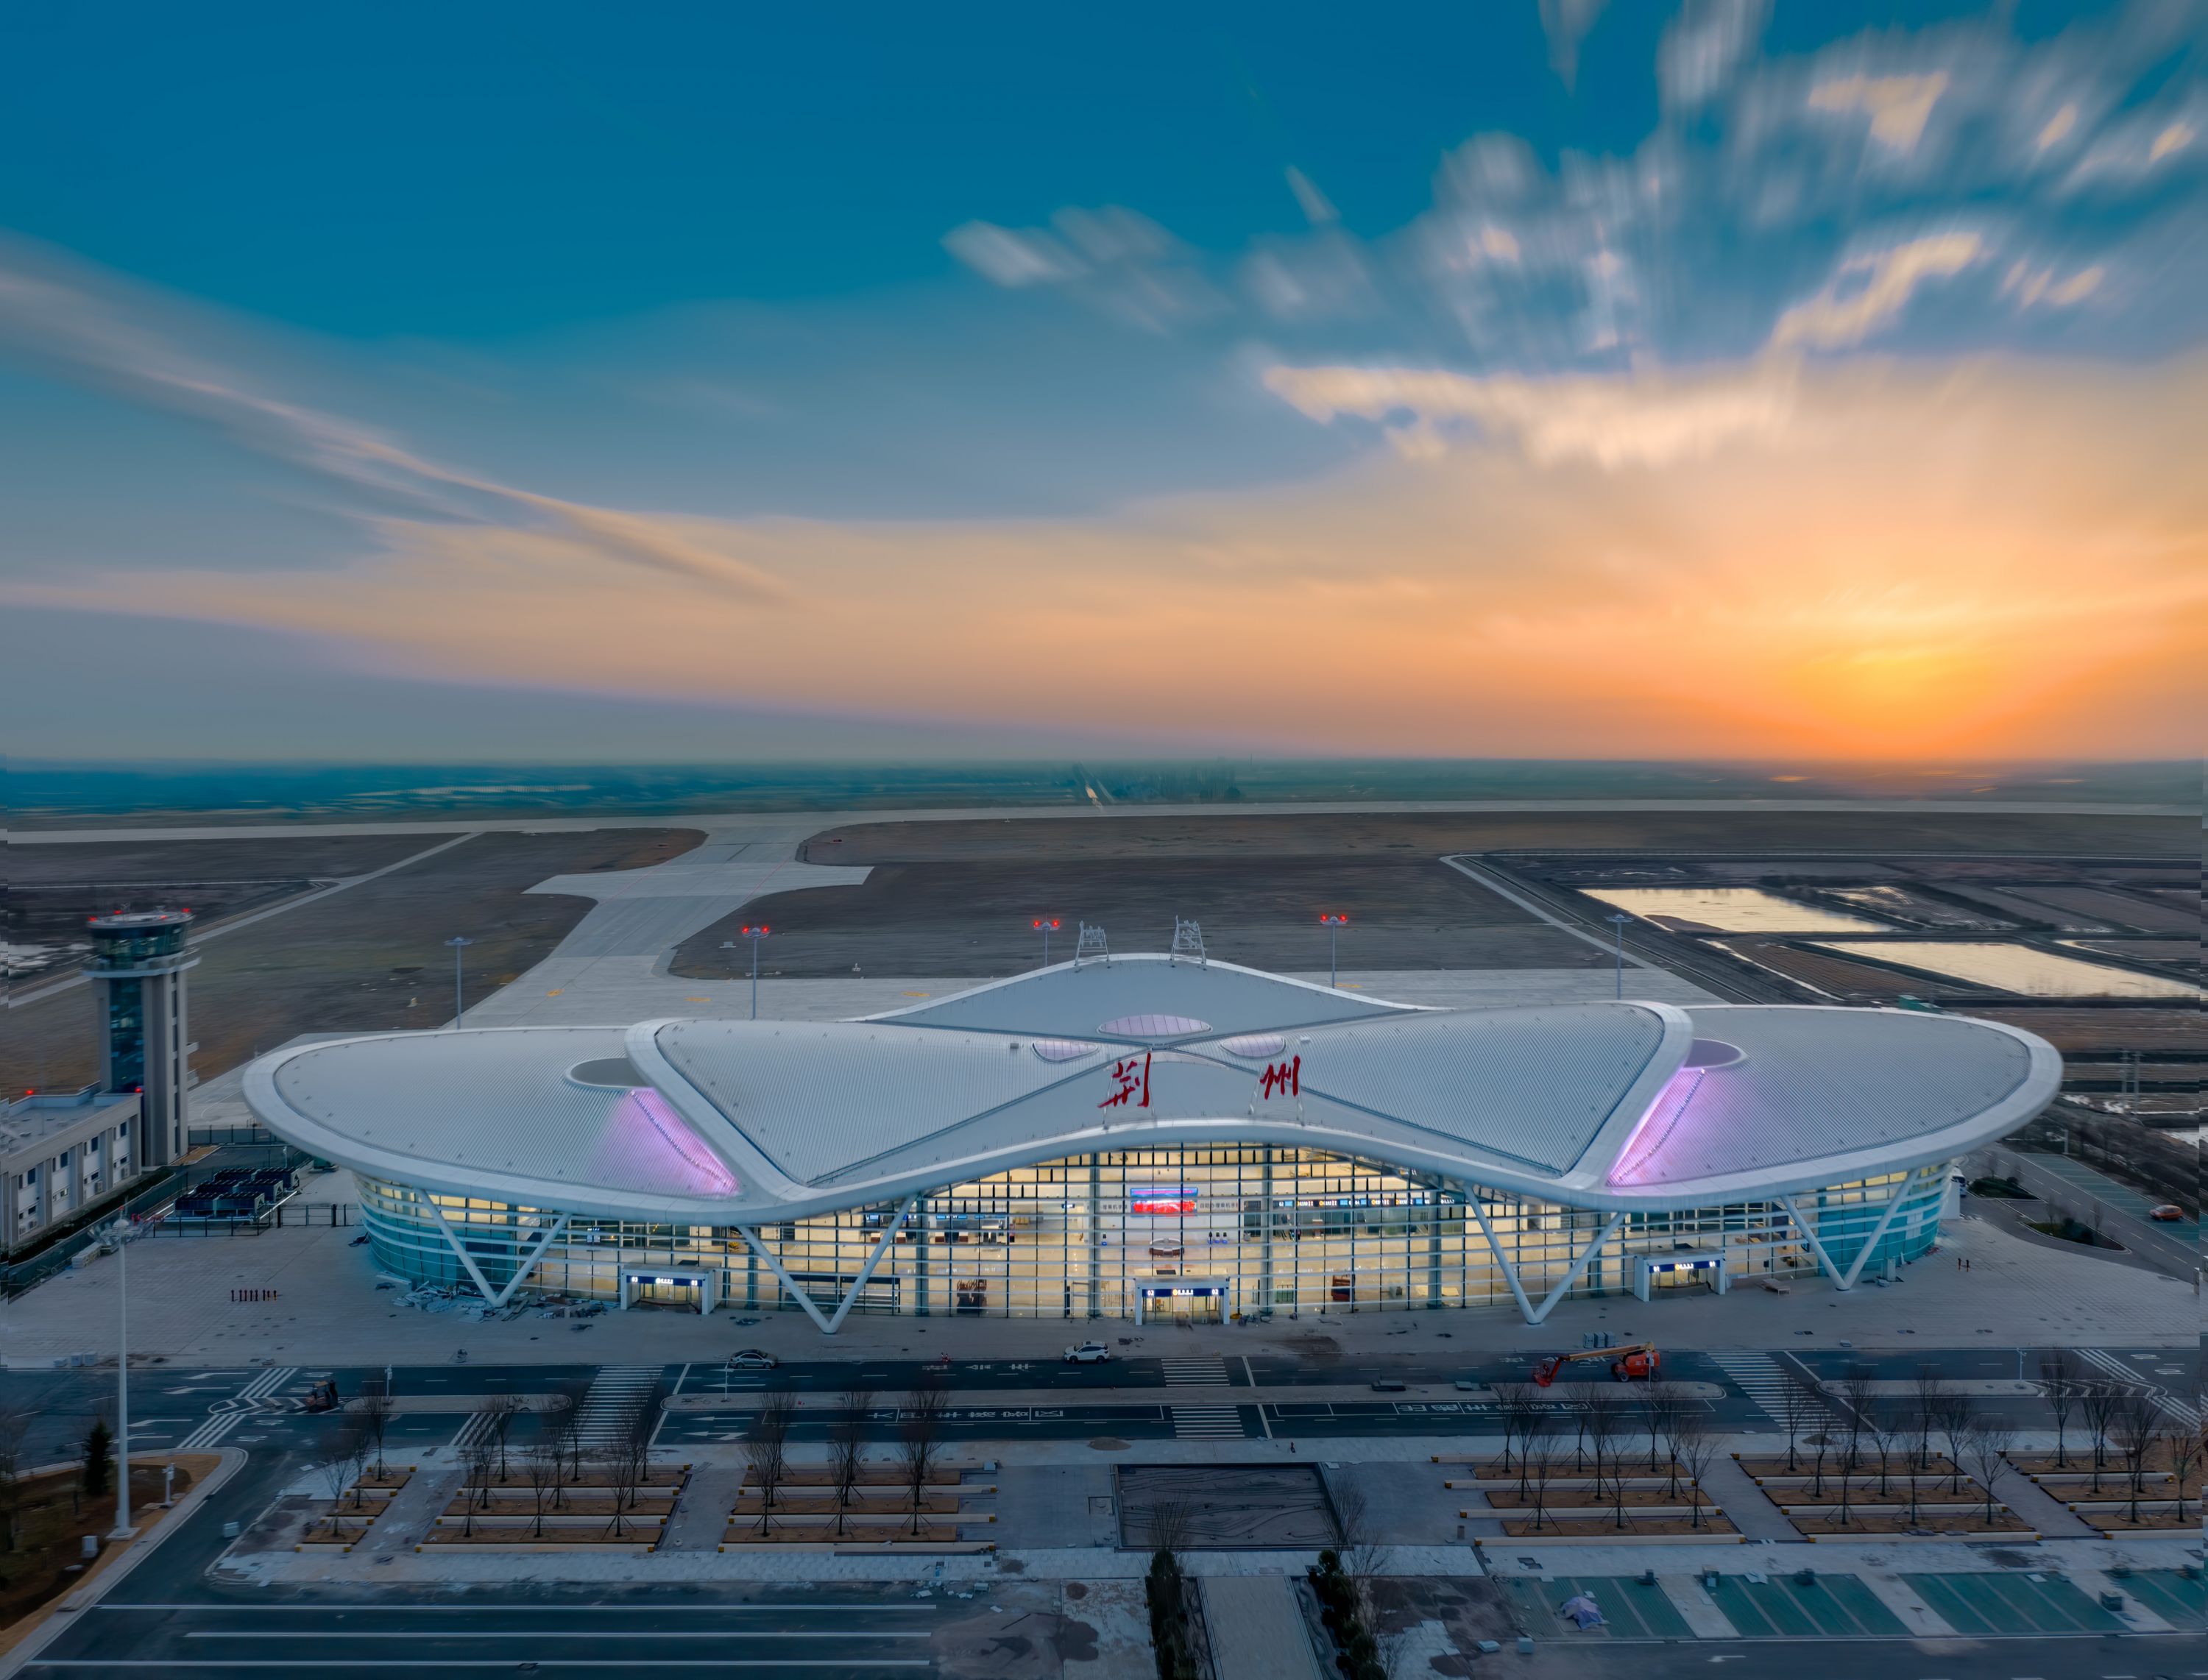 荆州机场迎来首个客运航班,飞广州1小时45分钟